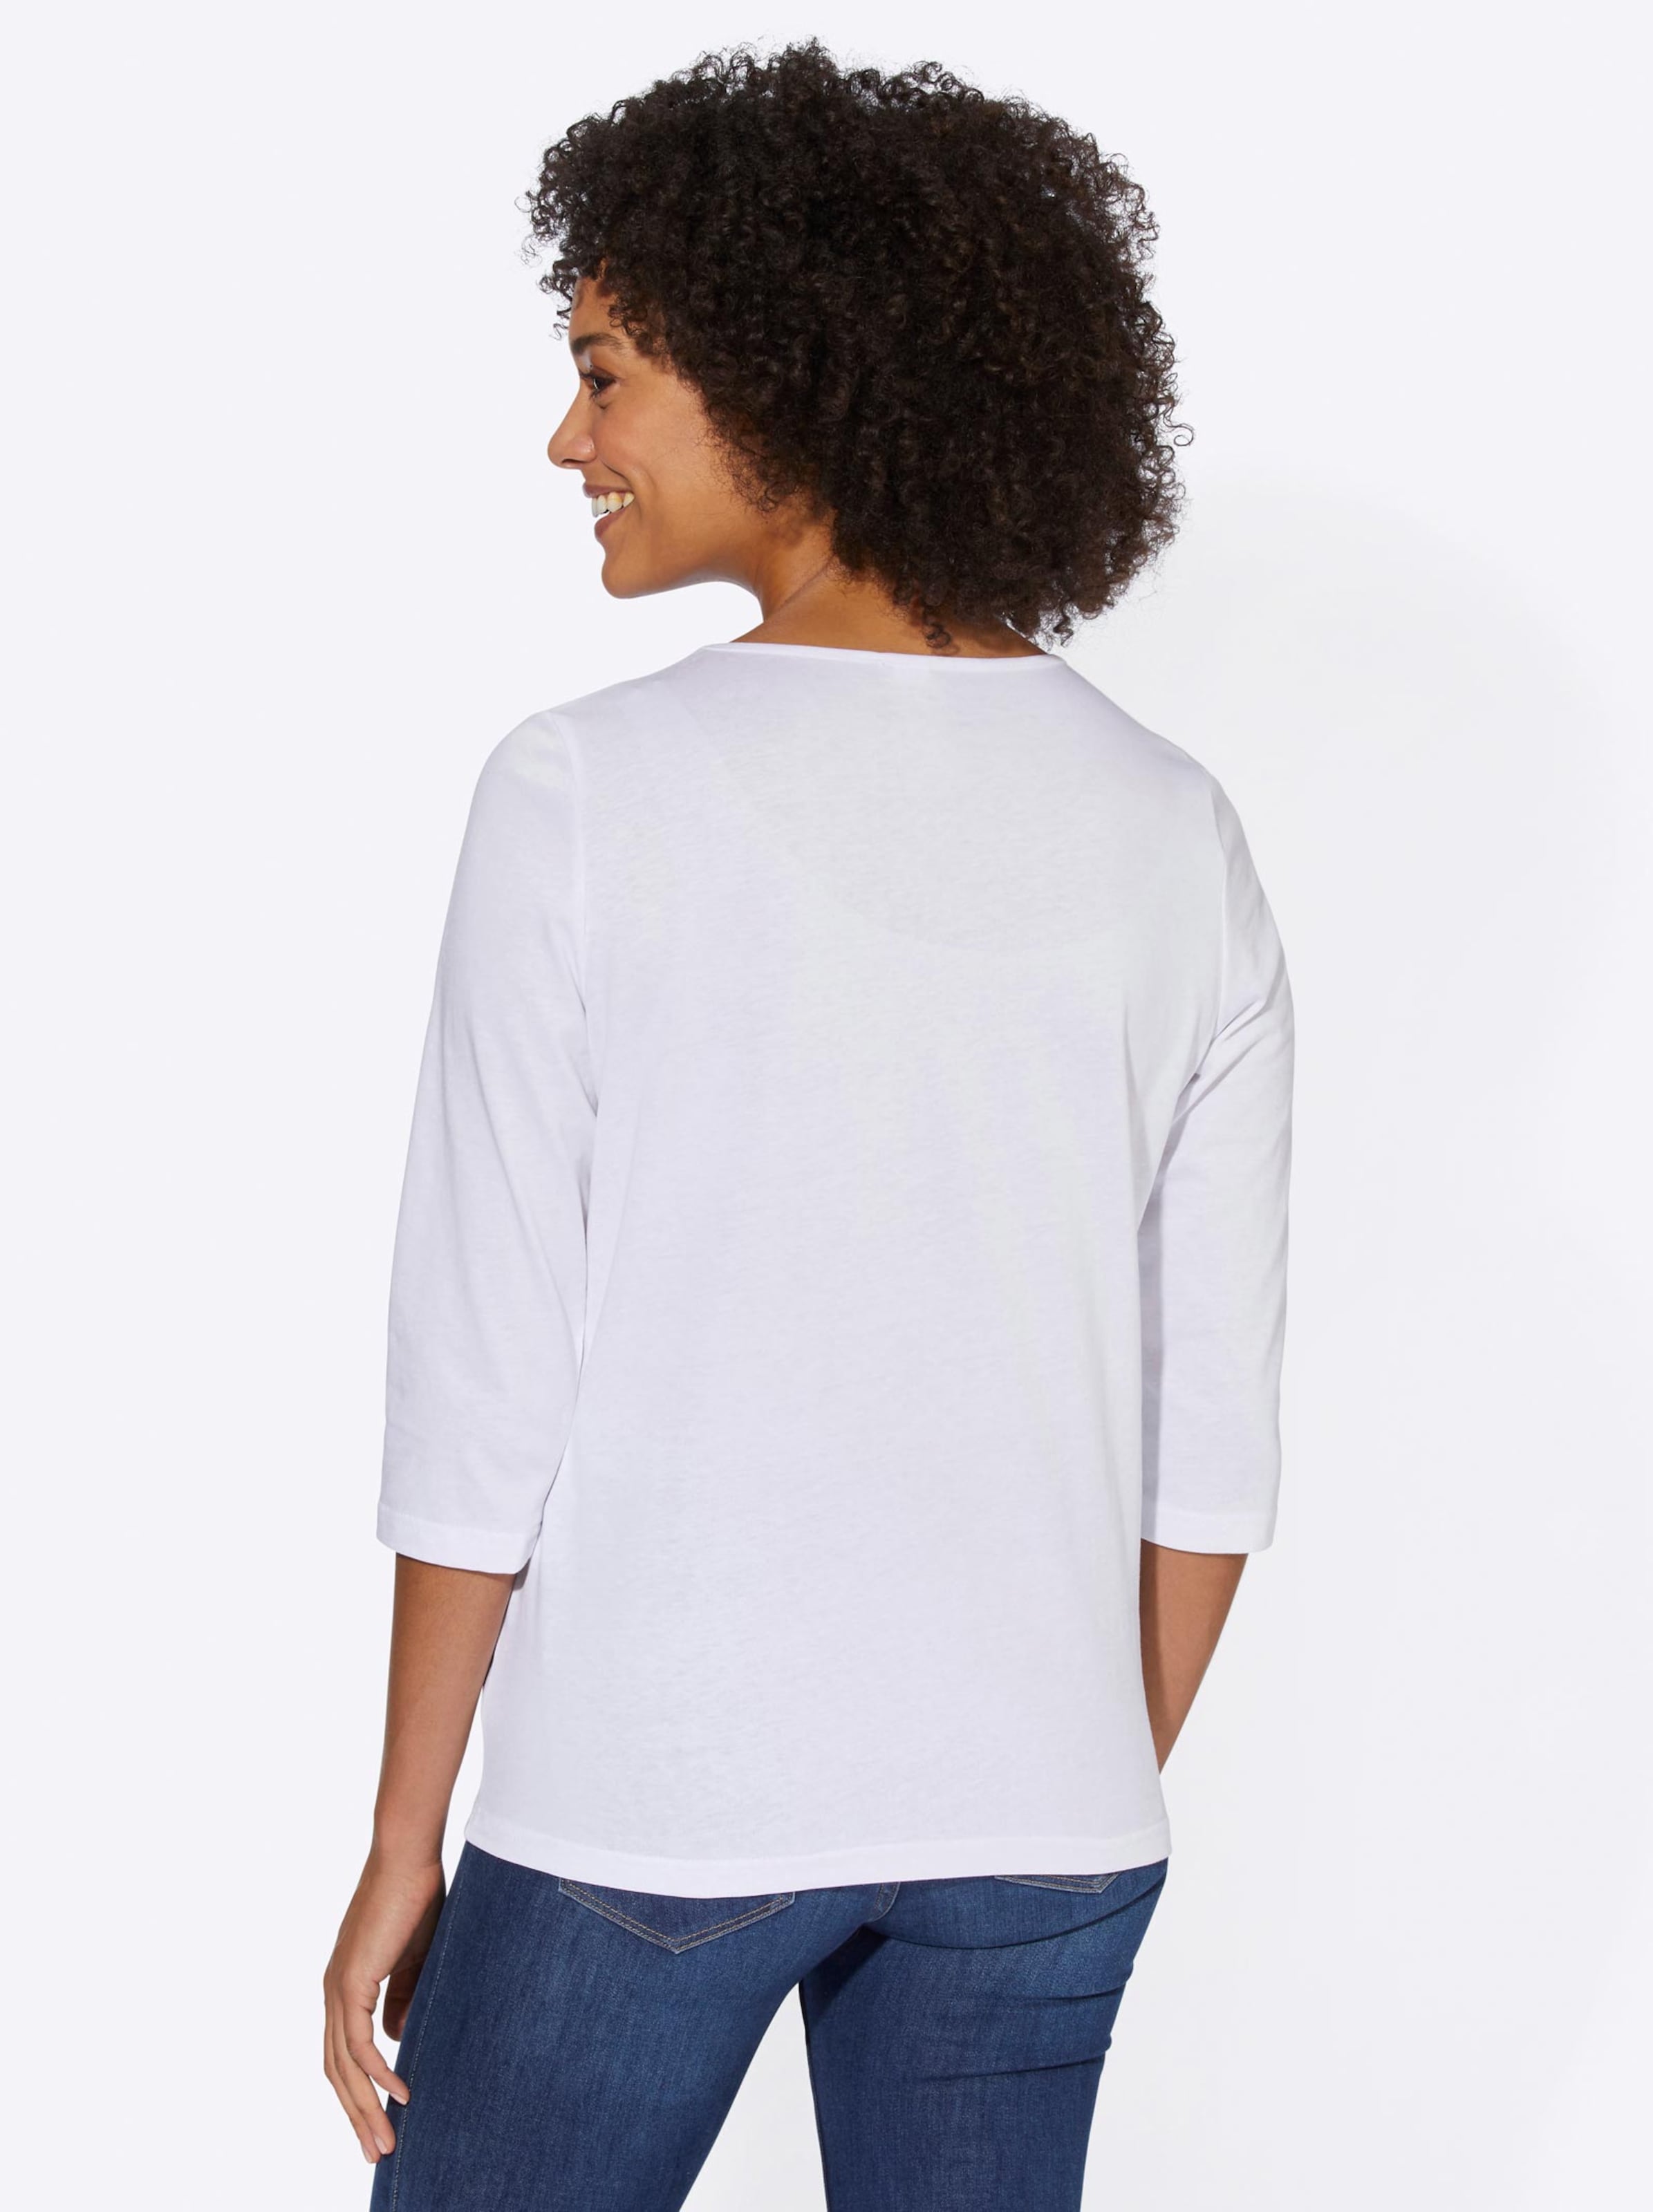 Damenmode Shirts 3/4-Arm-Shirt in weiß 